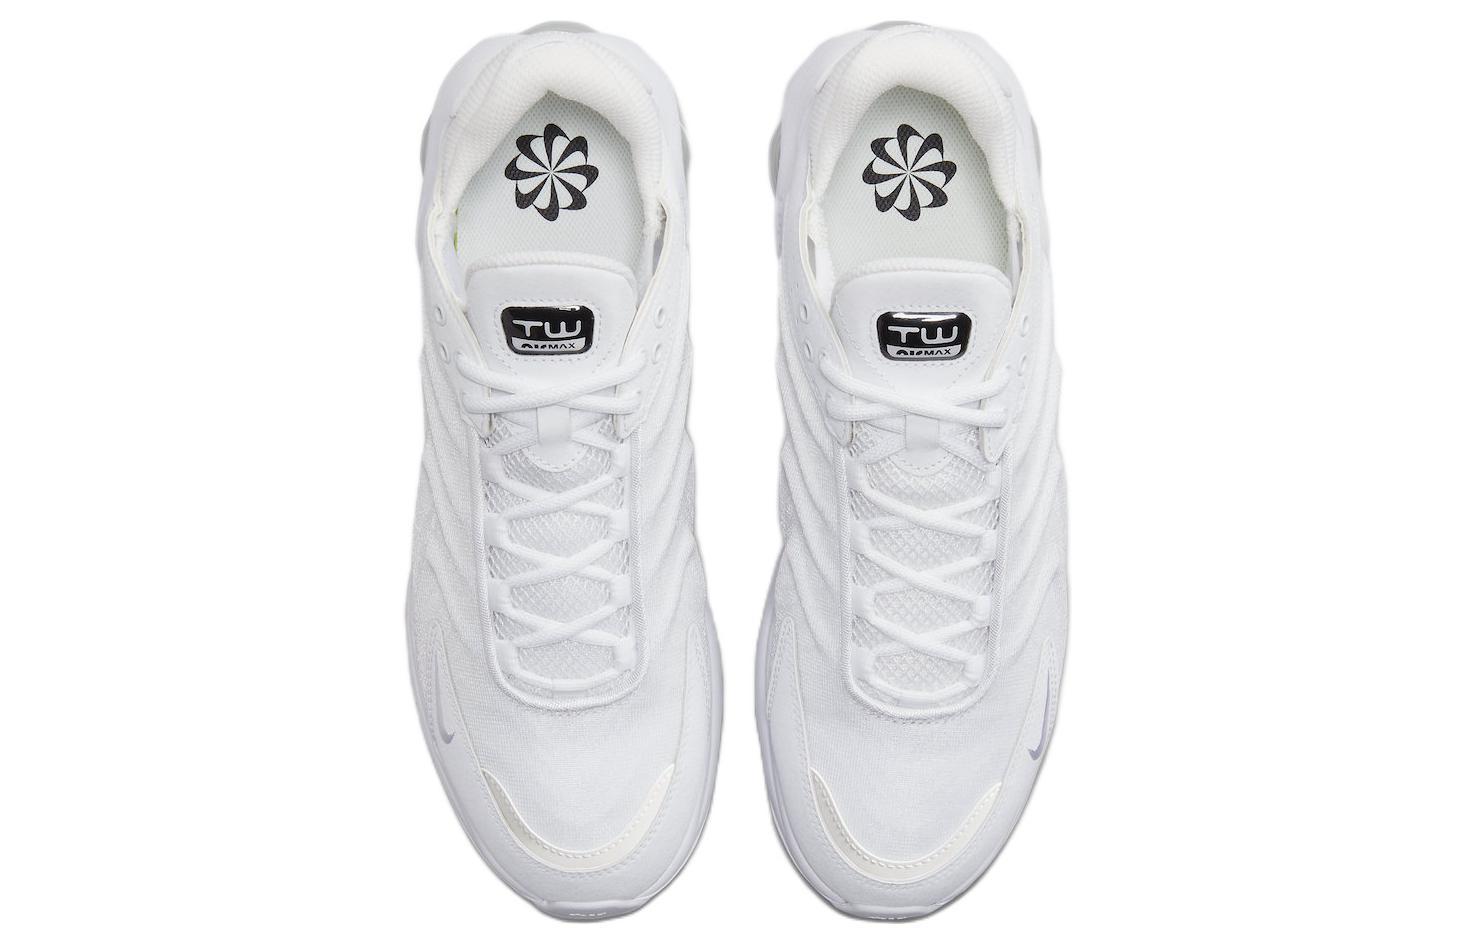 Nike Air Max TW "Triple White"